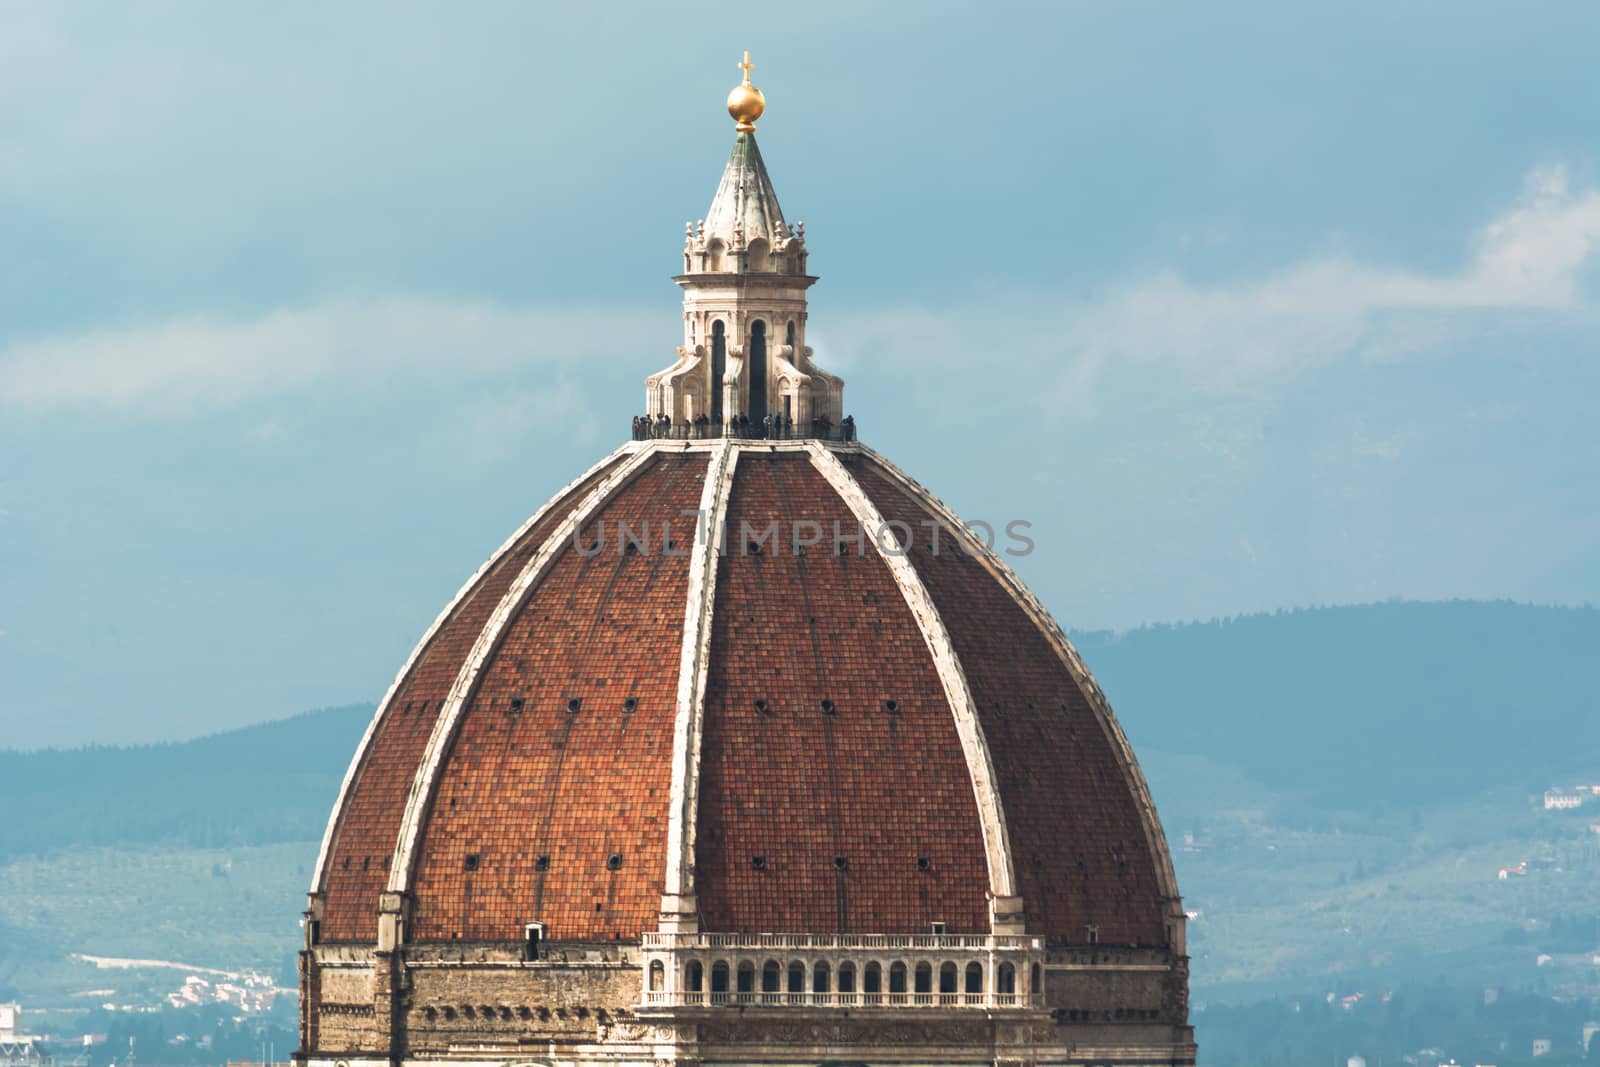 Brunelleschi Dome in Florence by rarrarorro